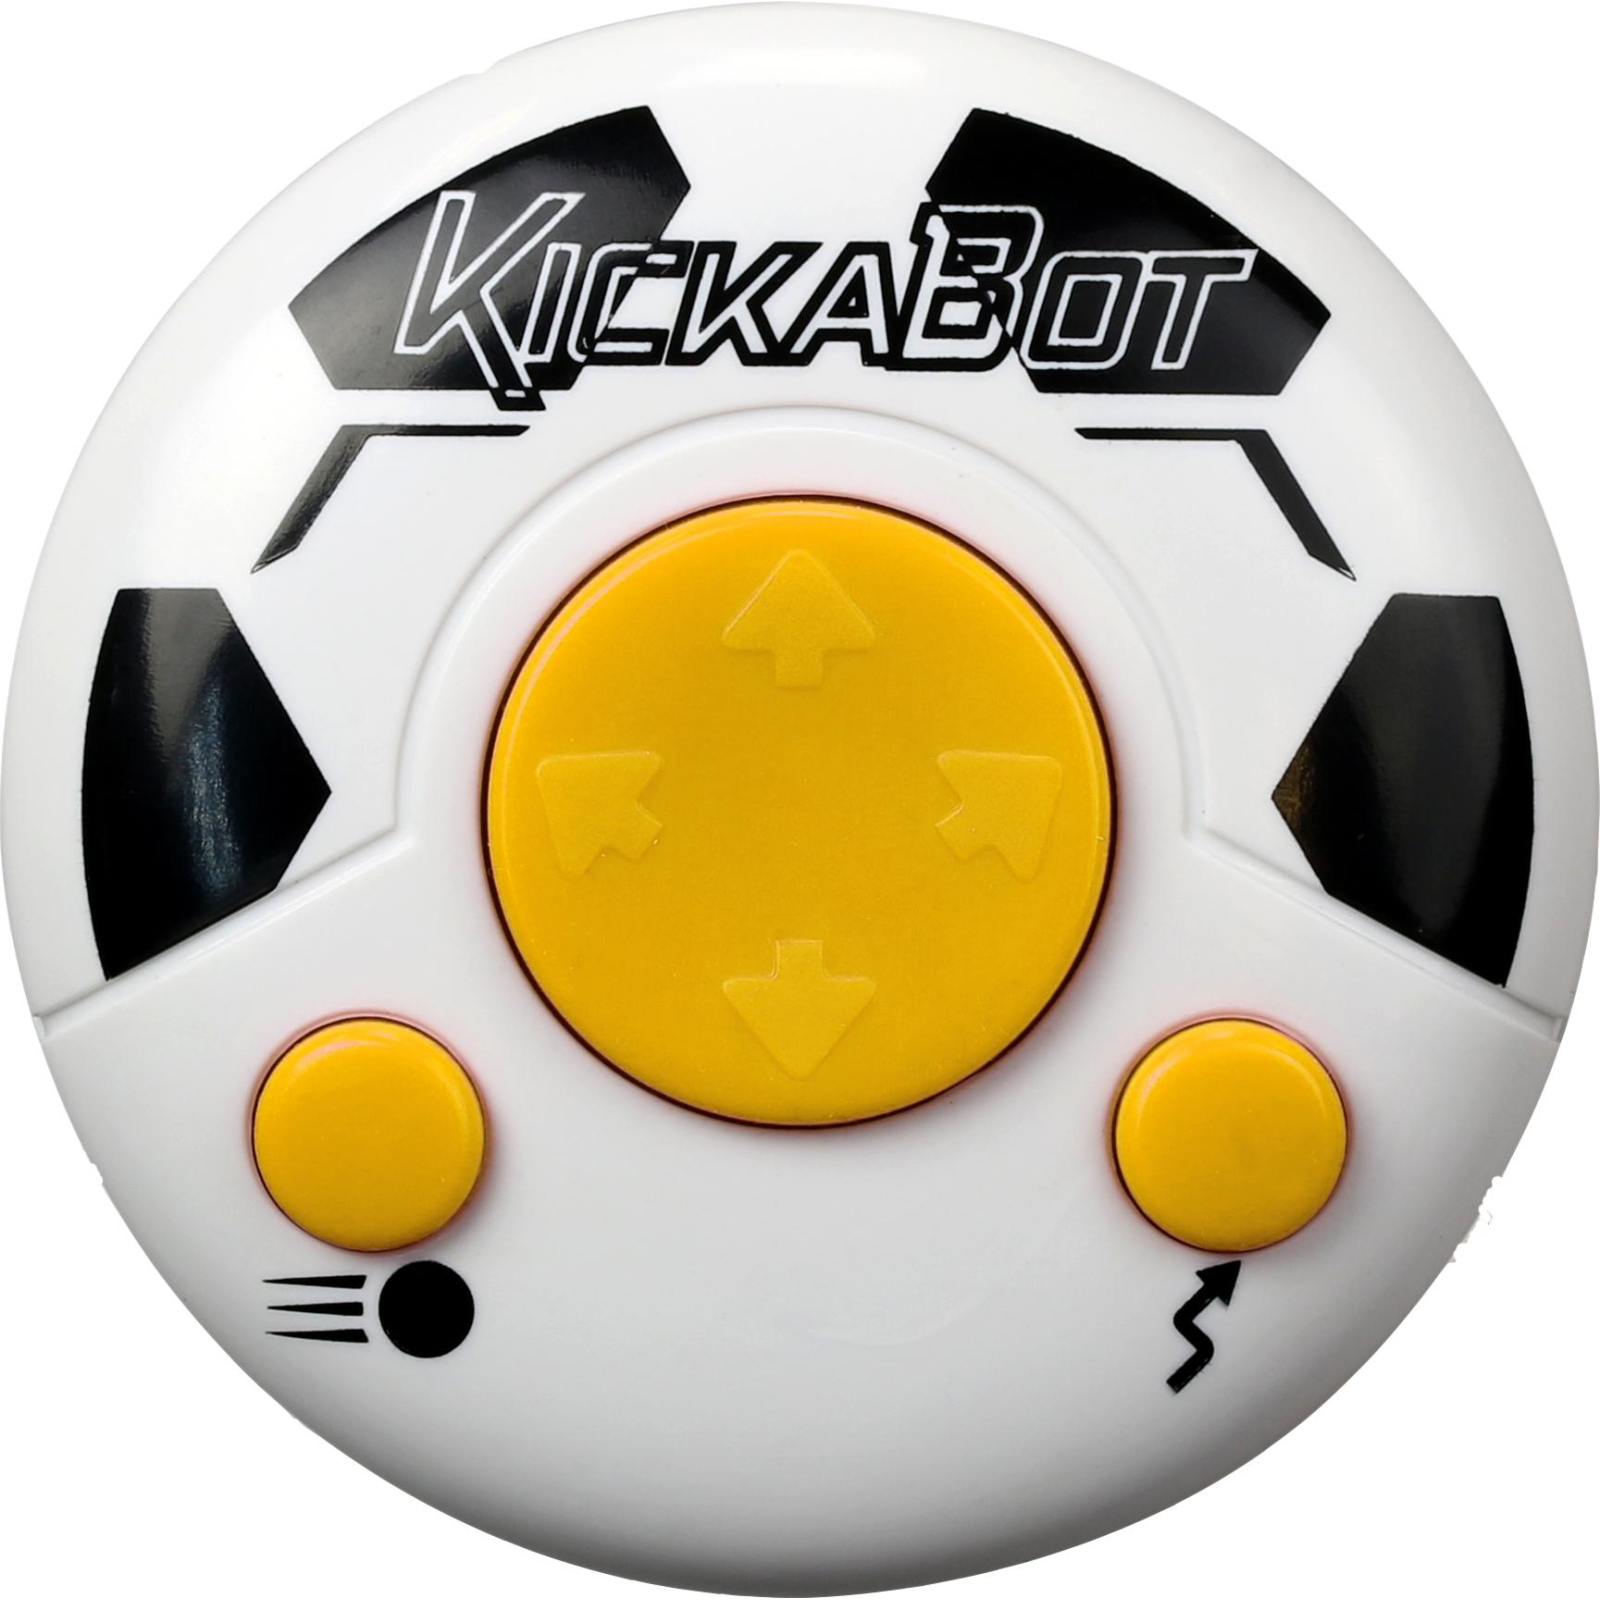 Интерактивная игрушка Silverlit Роботы-футболисты (88549) изображение 4